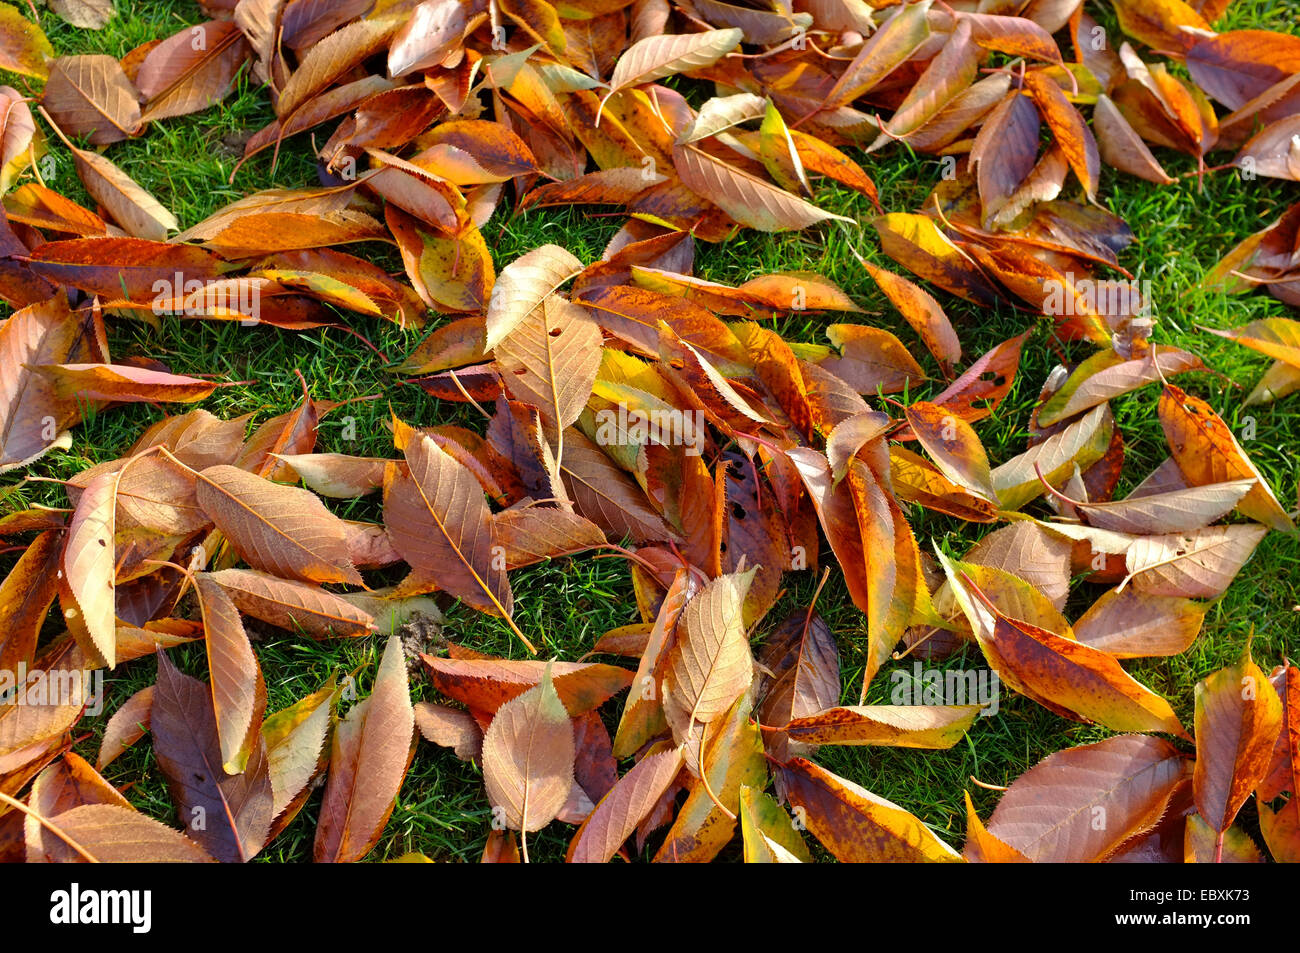 fallen Autumn leaves on grass Stock Photo